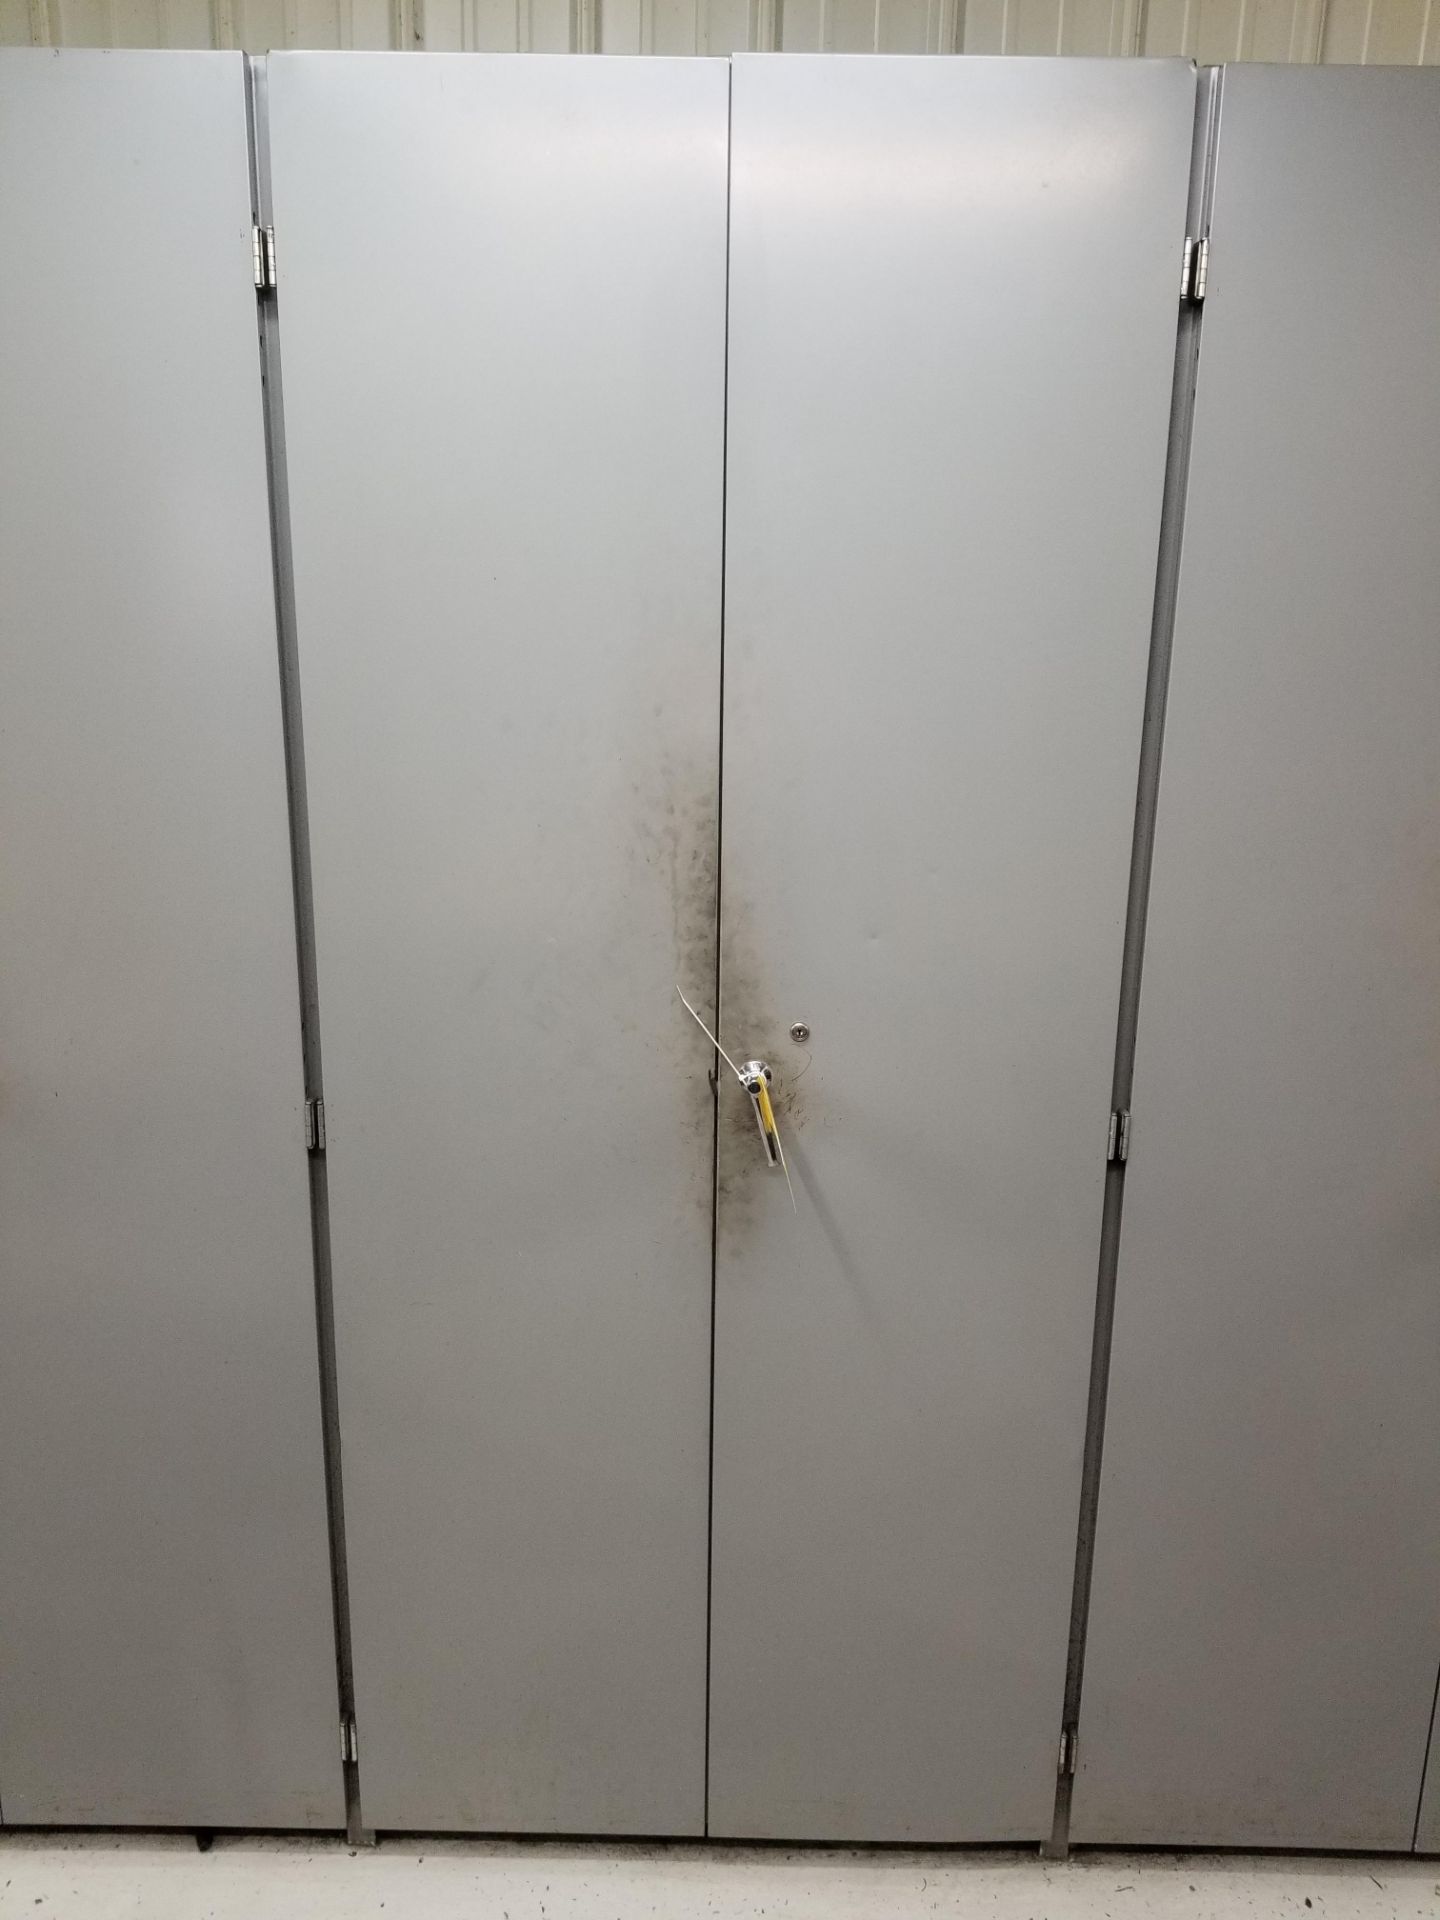 STEEL 2-DOOR SUPPLY CABINET AND CONTENTS